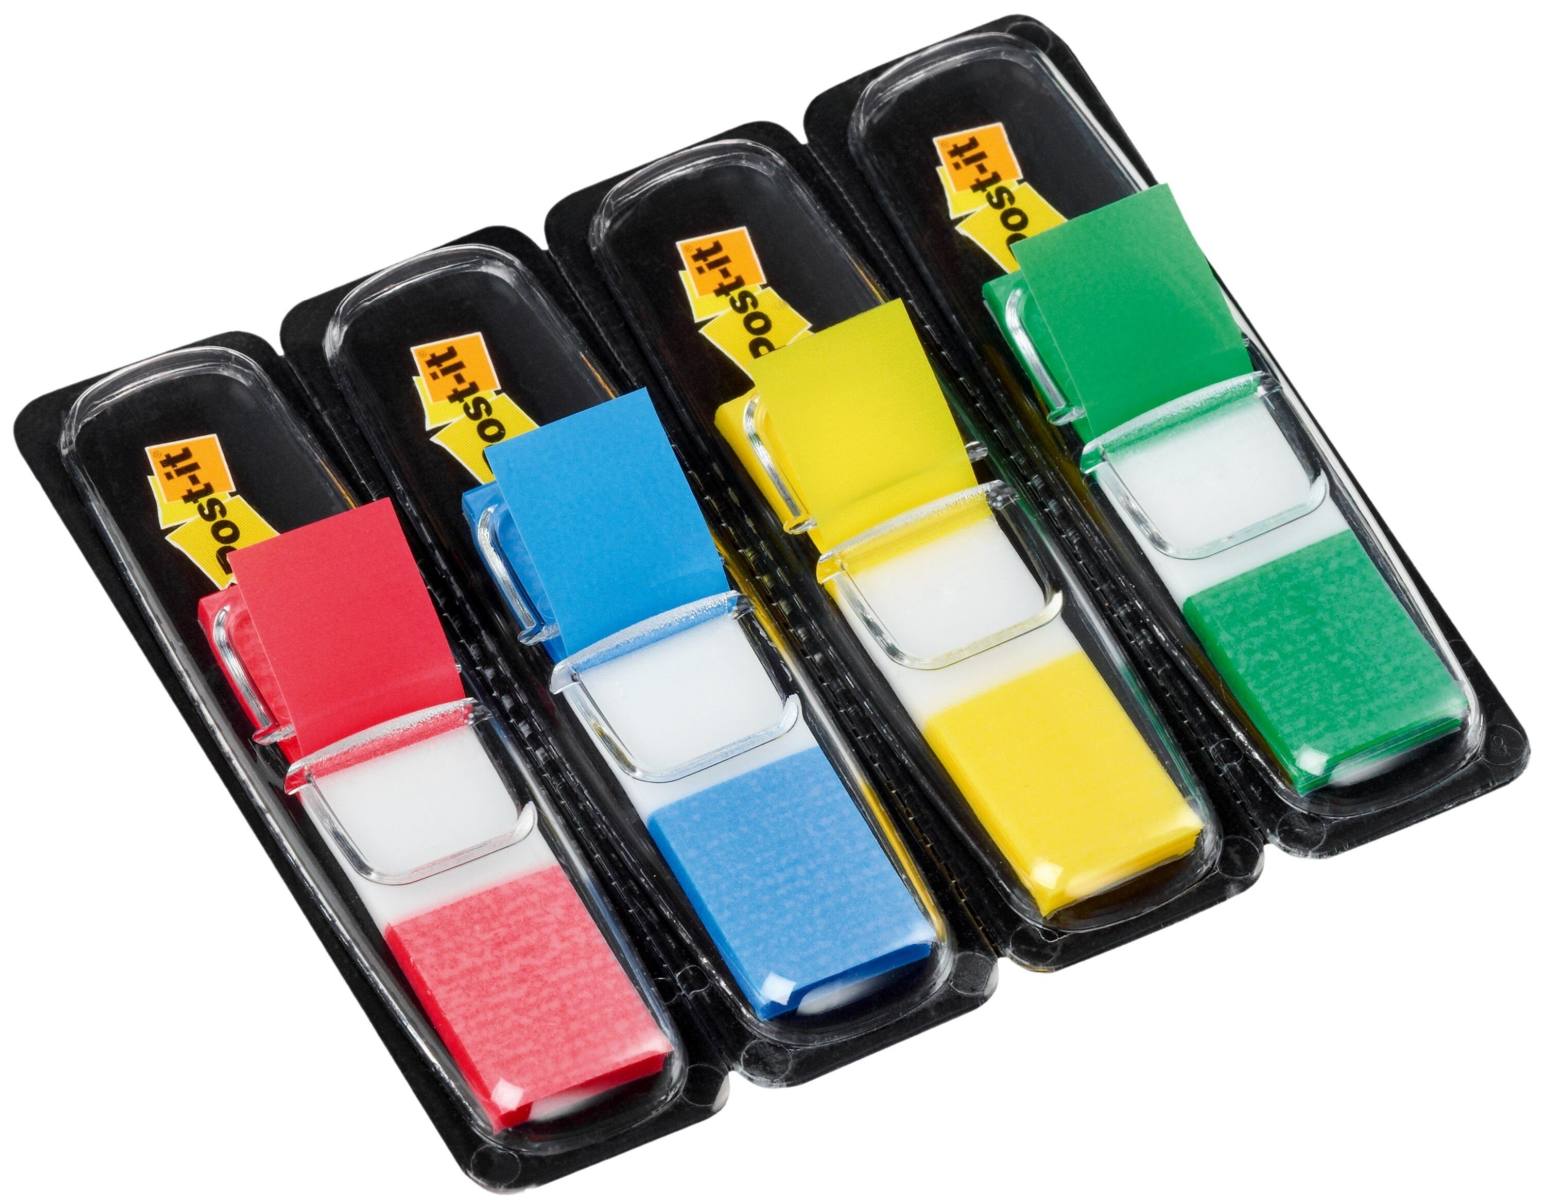 3M Post-it Index Mini 683-4, 11,9 mm x 43,2 mm, blau, gelb, grün, rot, 4 x 35 Haftstreifen im Spender